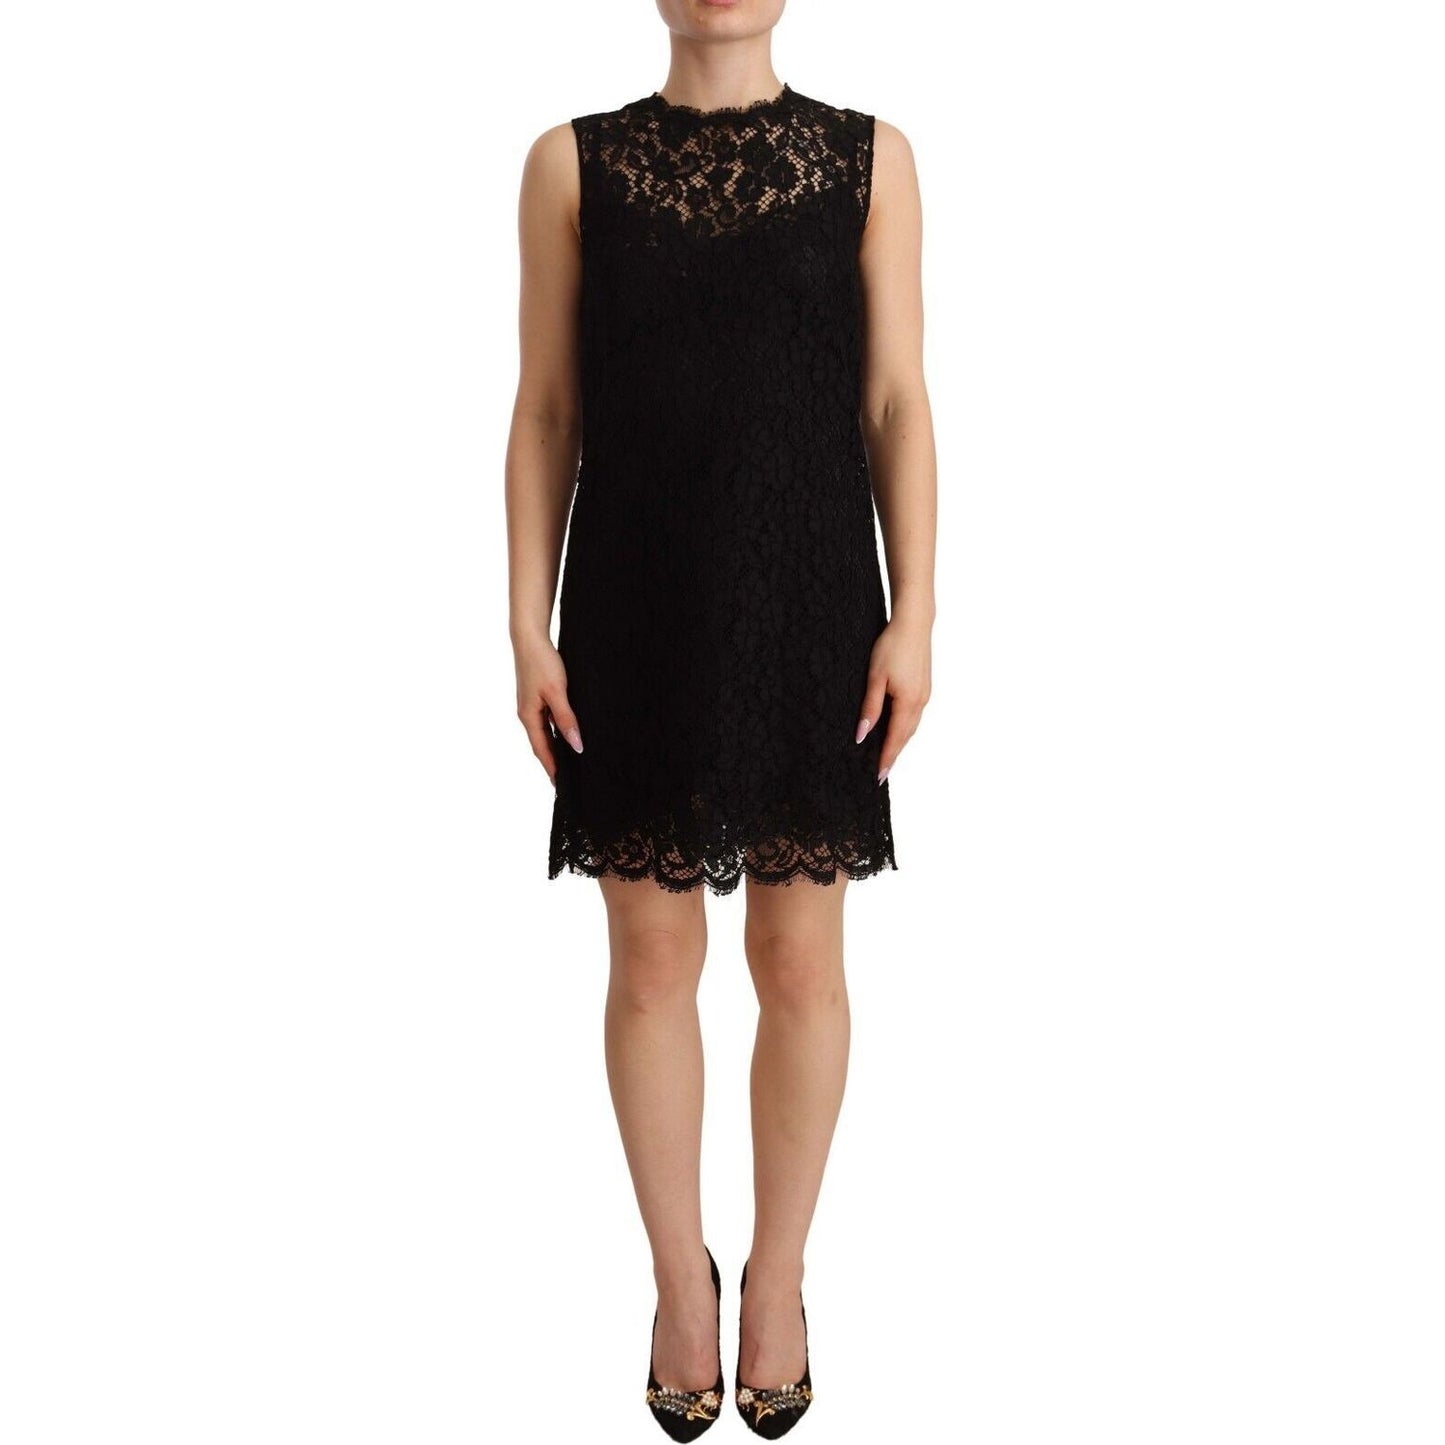 Dolce & Gabbana Elegant Floral Lace Sheath Dress in Black black-floral-lace-sheath-sleeveless-mini-dress s-l1600-63-f57f2049-63f.jpg